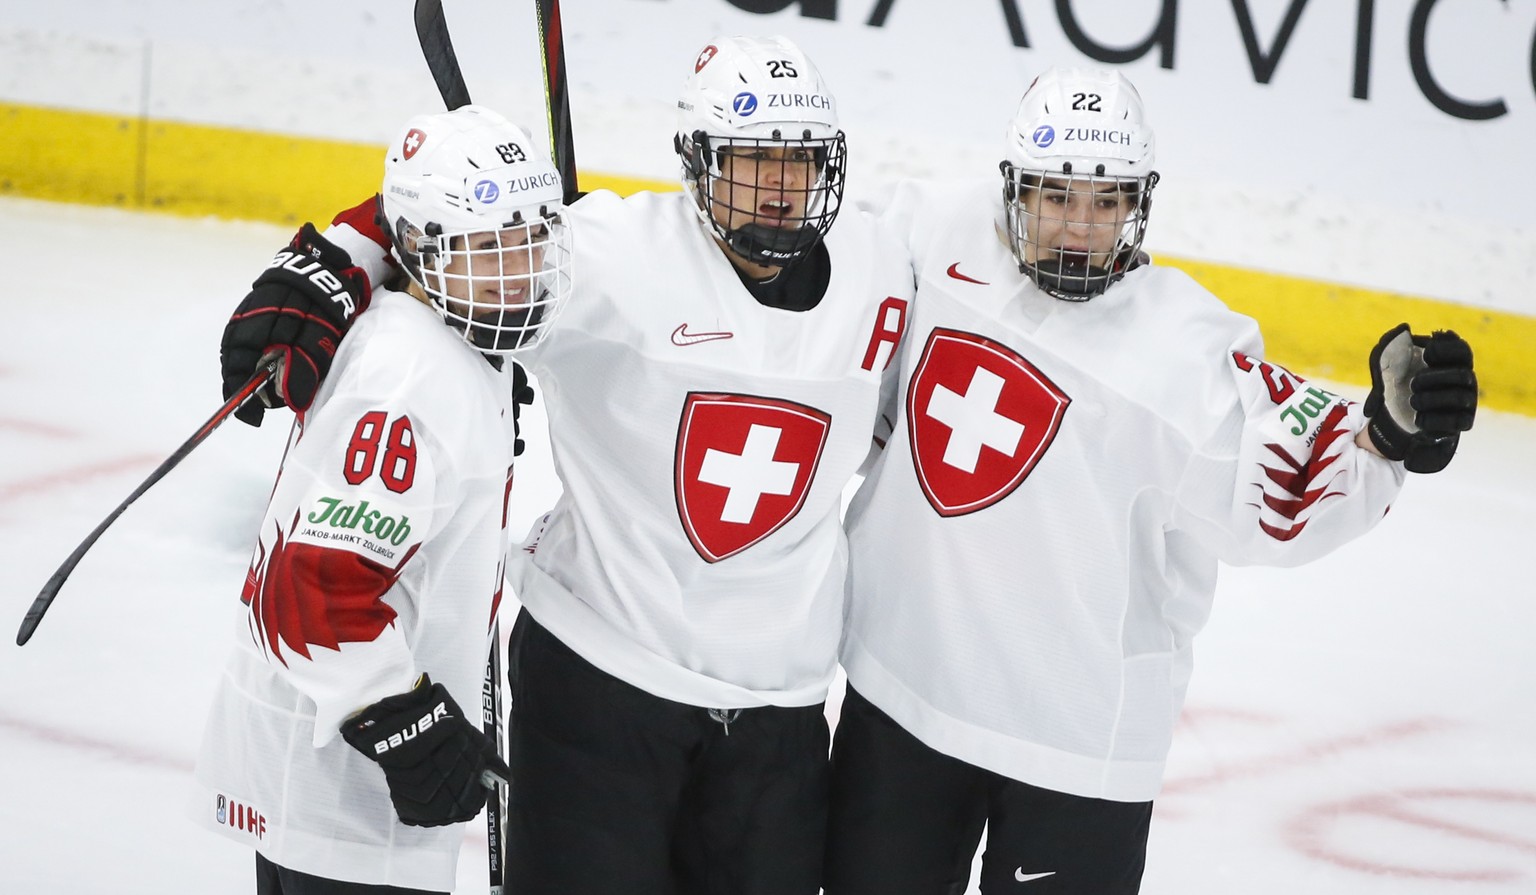 Malgré des conditions financières très difficiles, les hockeyeuses suisses visent une médaille aux JO de Pékin.